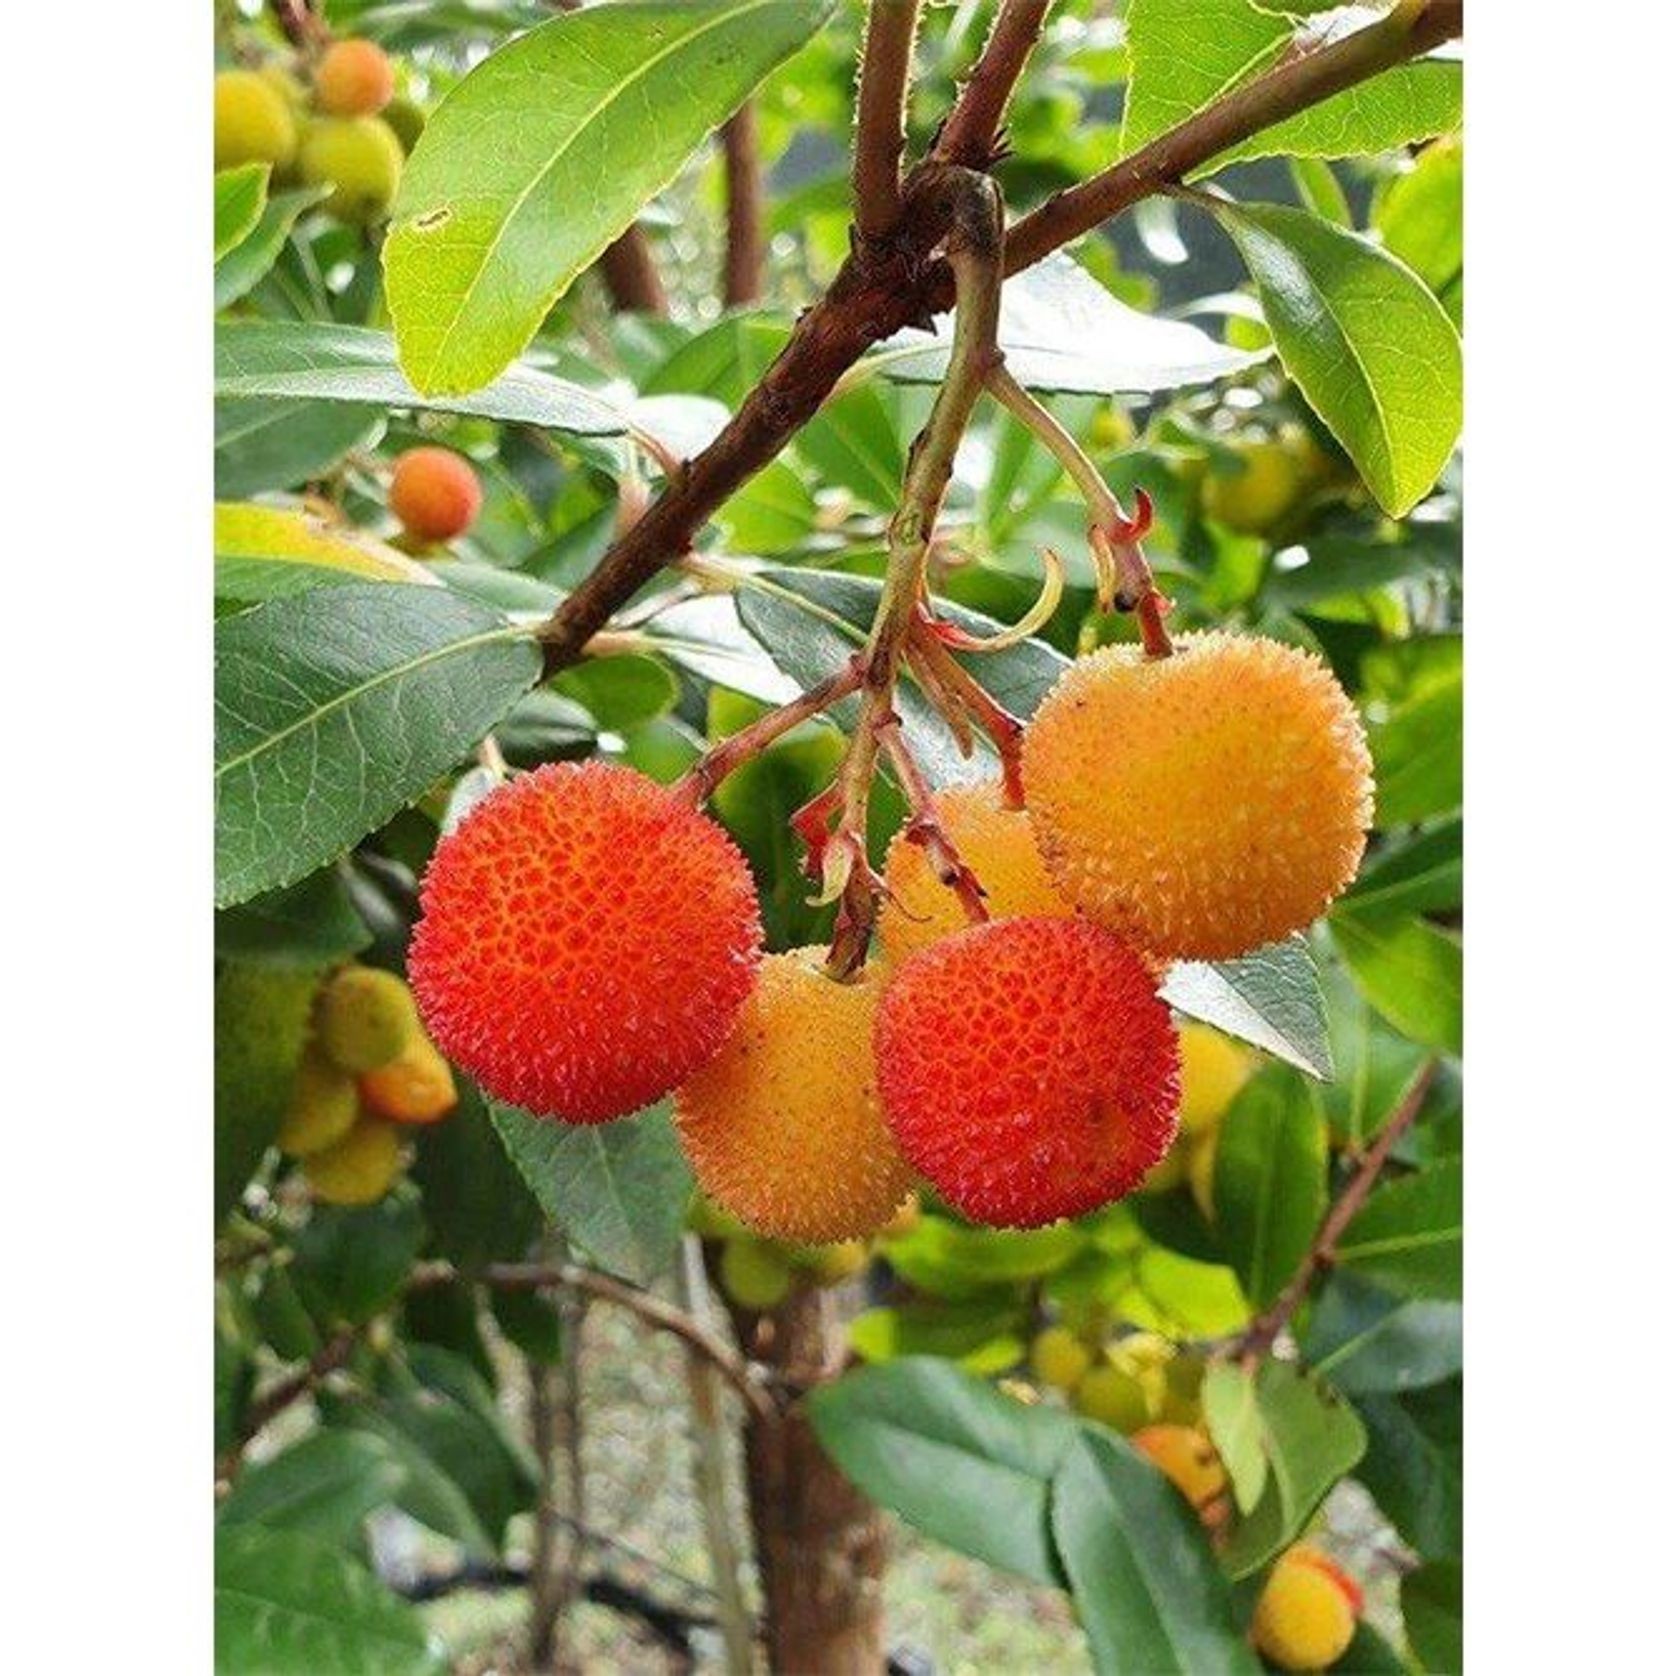 Arbutus unedo | Irish Strawberry Tree gallery detail image